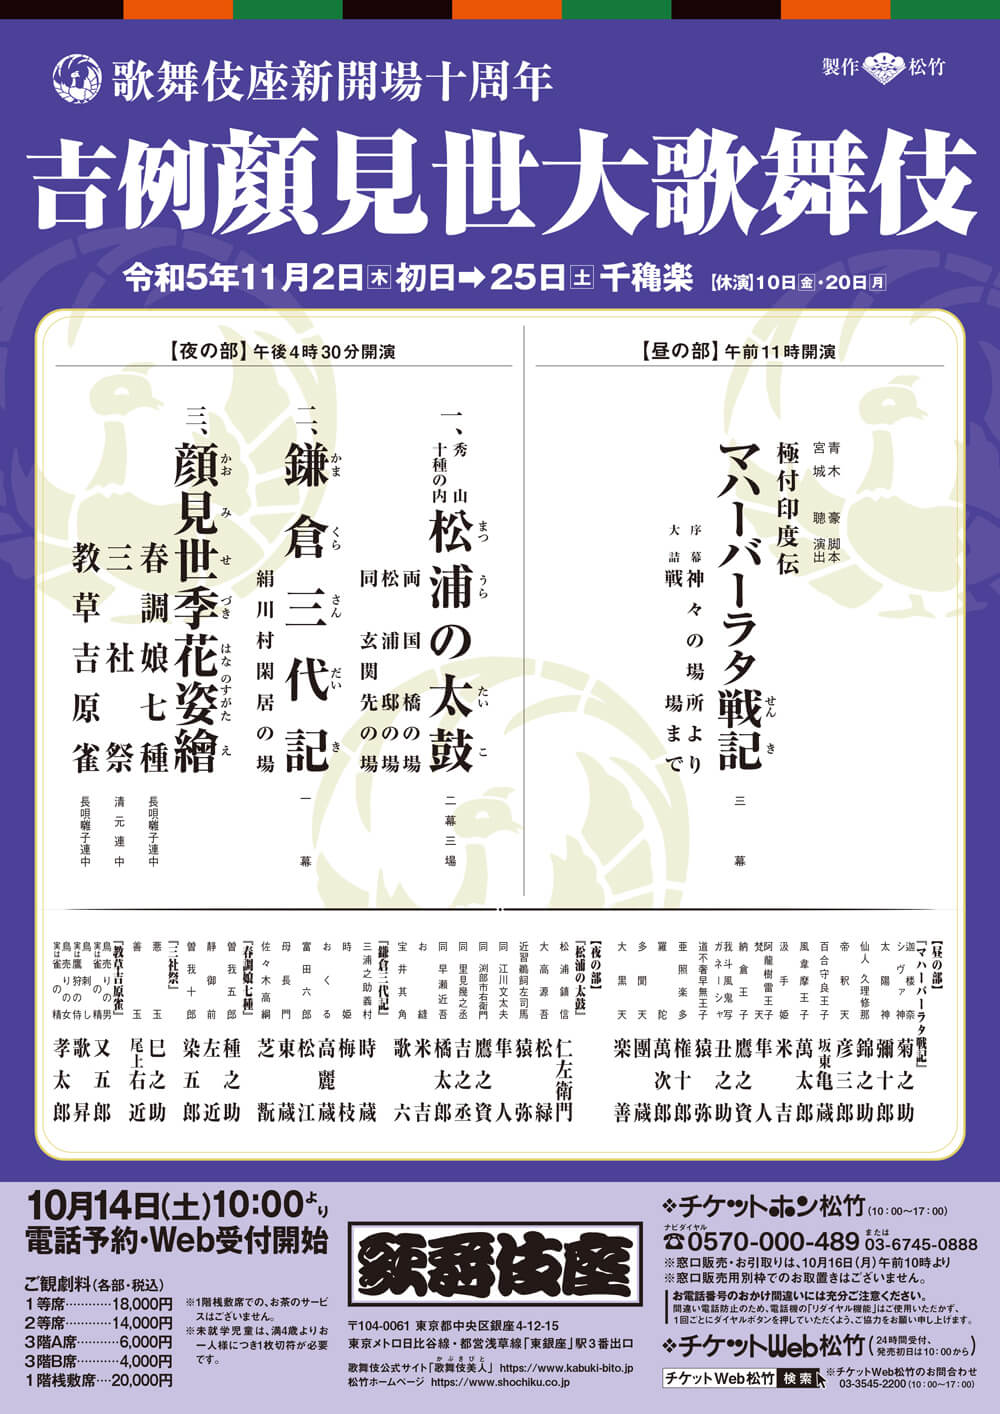 November Program at the kabukiza